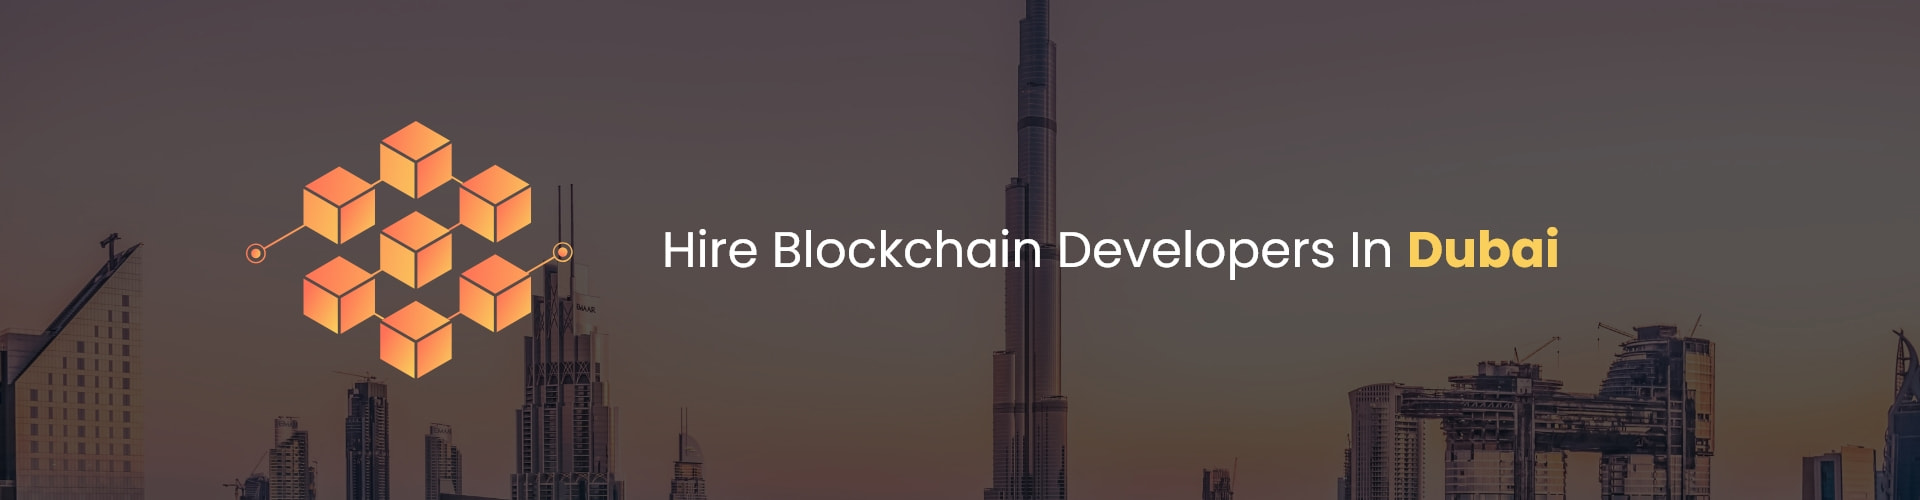 hire blockchain developers in dubai